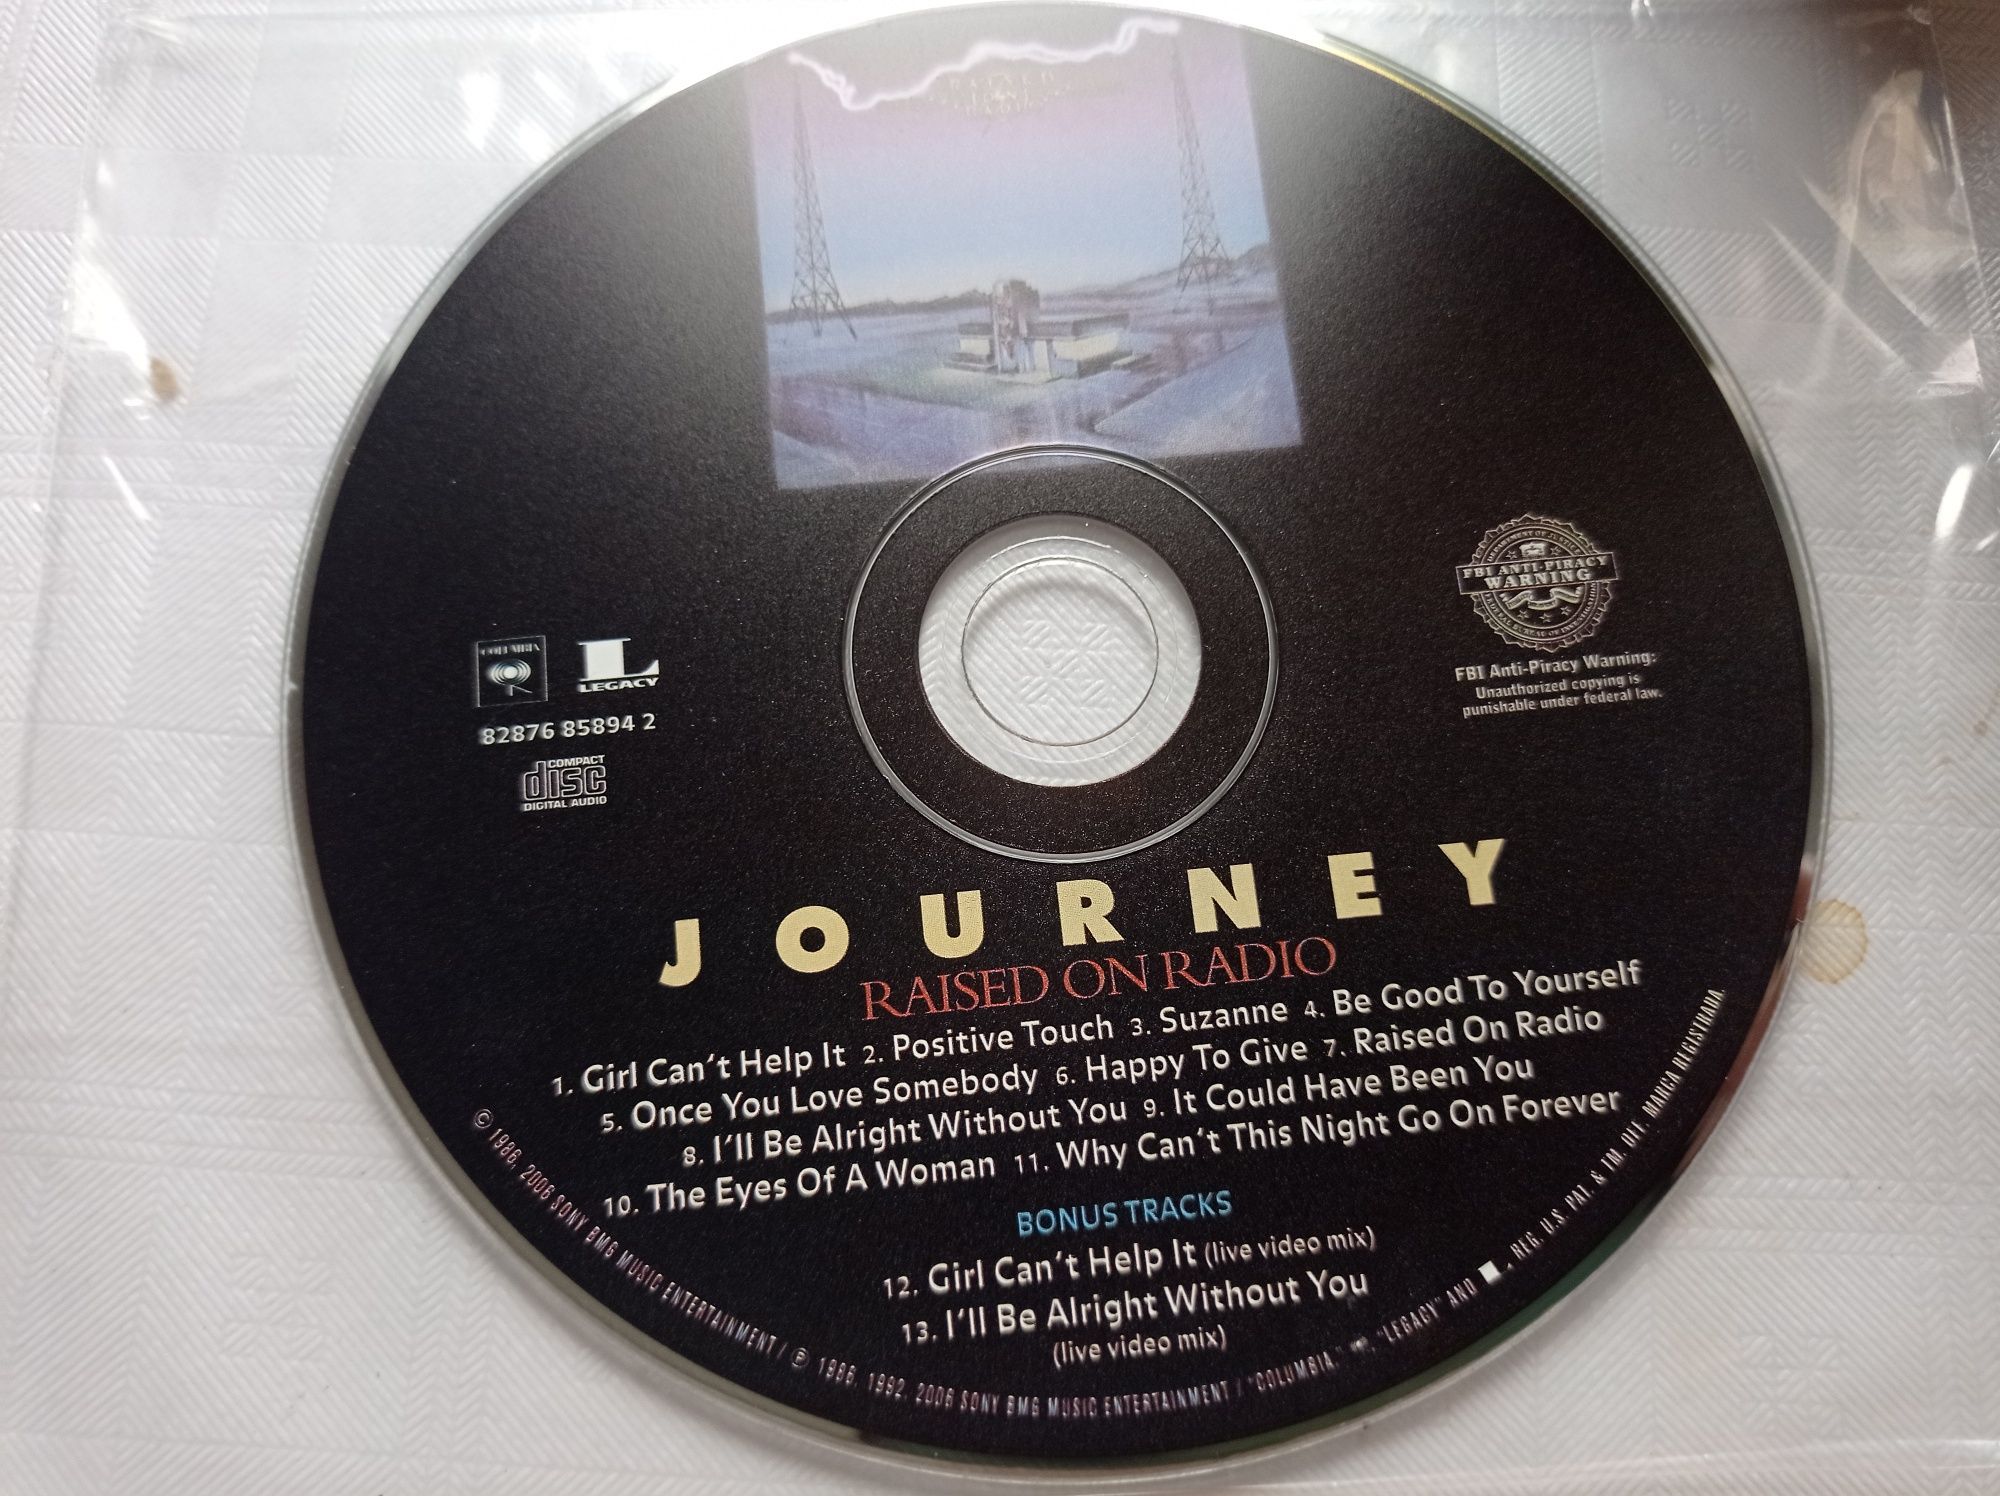 Journey - Raised on radio